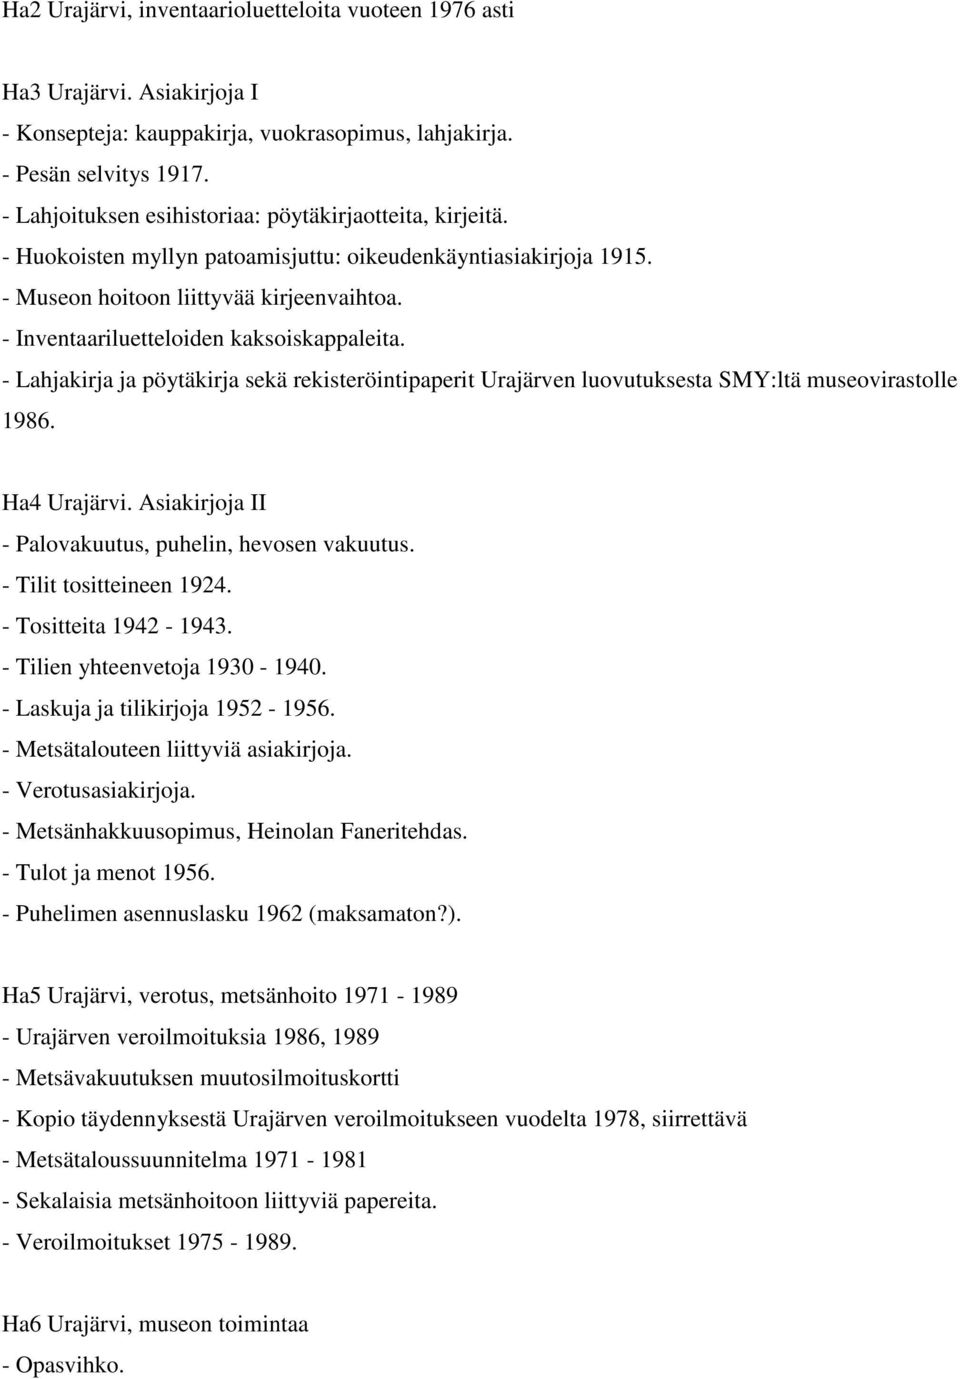 - Inventaariluetteloiden kaksoiskappaleita. - Lahjakirja ja pöytäkirja sekä rekisteröintipaperit Urajärven luovutuksesta SMY:ltä museovirastolle 1986. Ha4 Urajärvi.